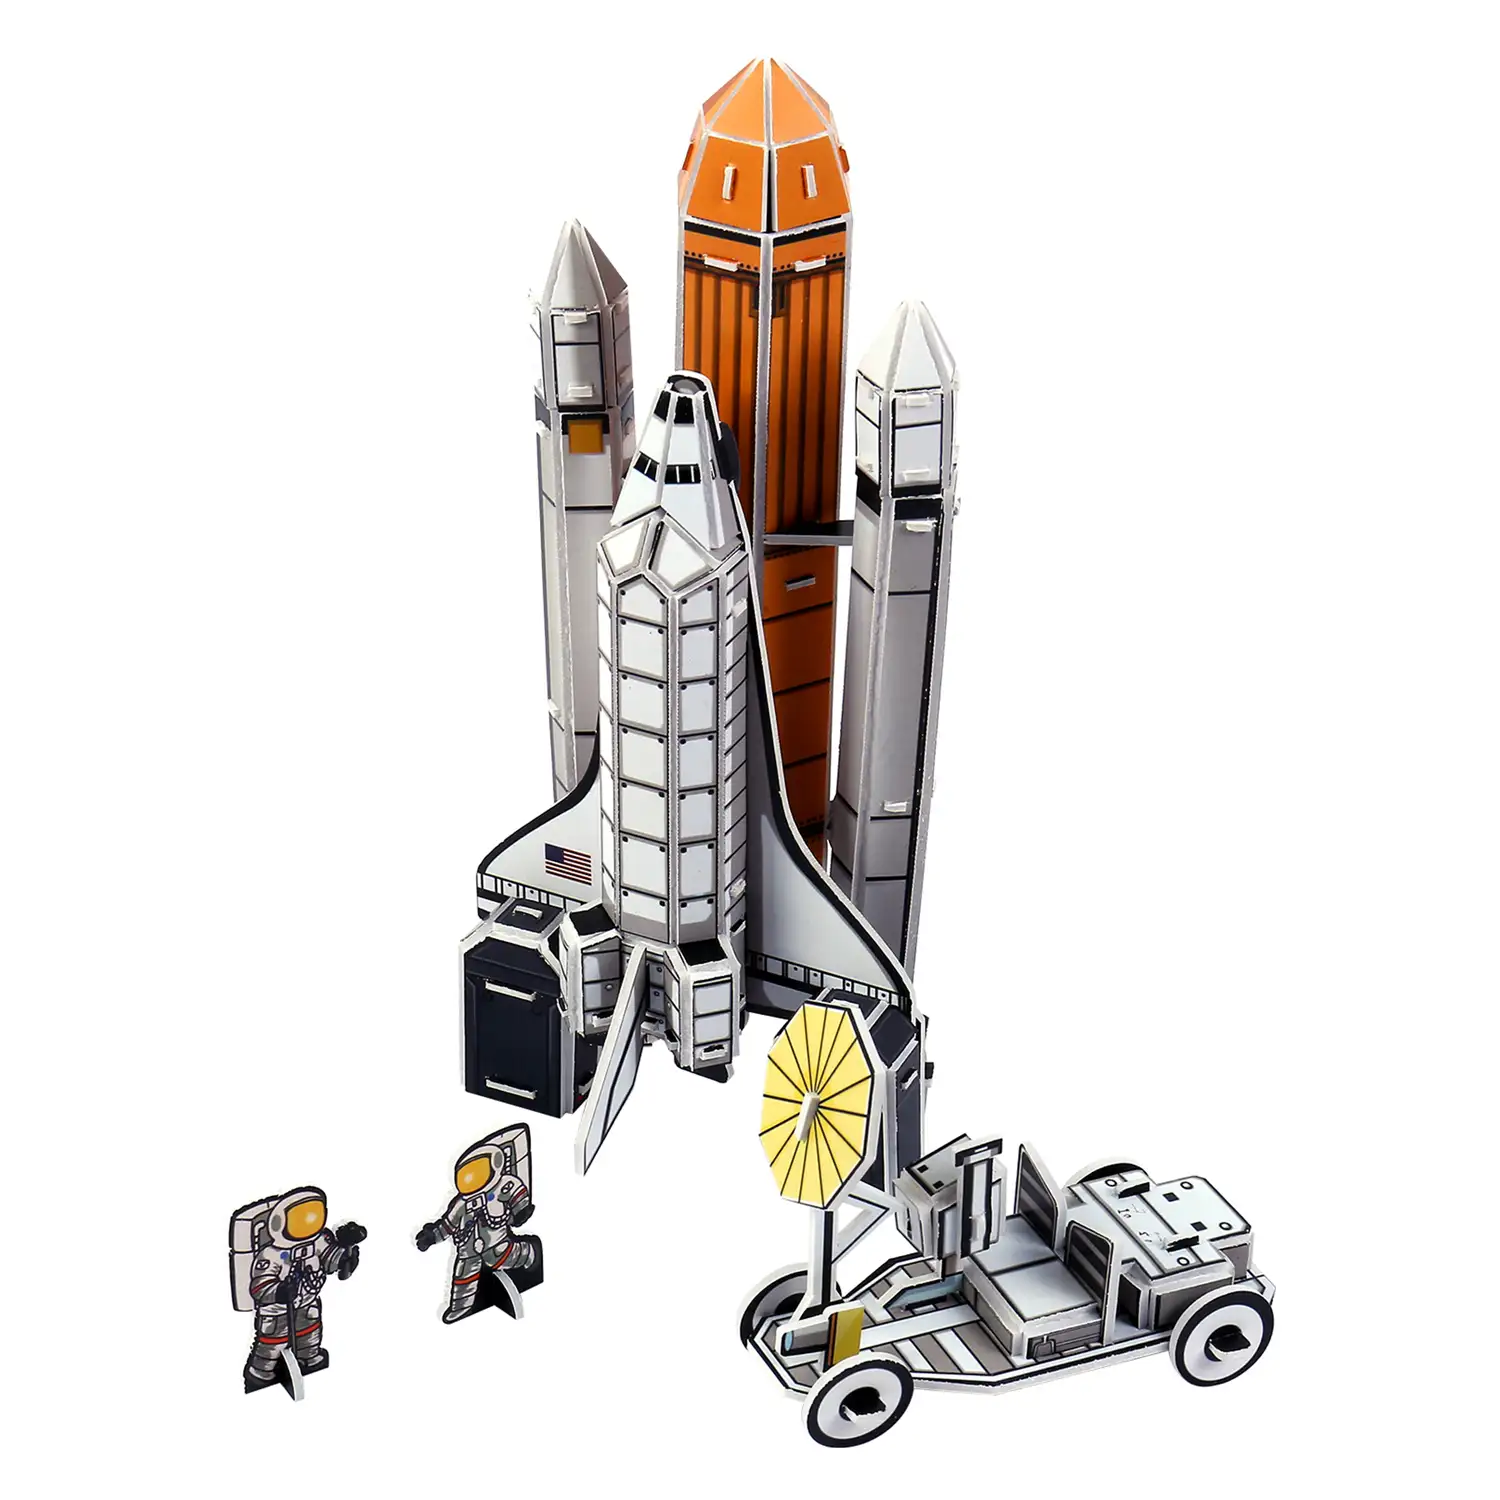 Puzlle 3D Space Shuttle Discovery 82 piezas.9x8x20 cm.